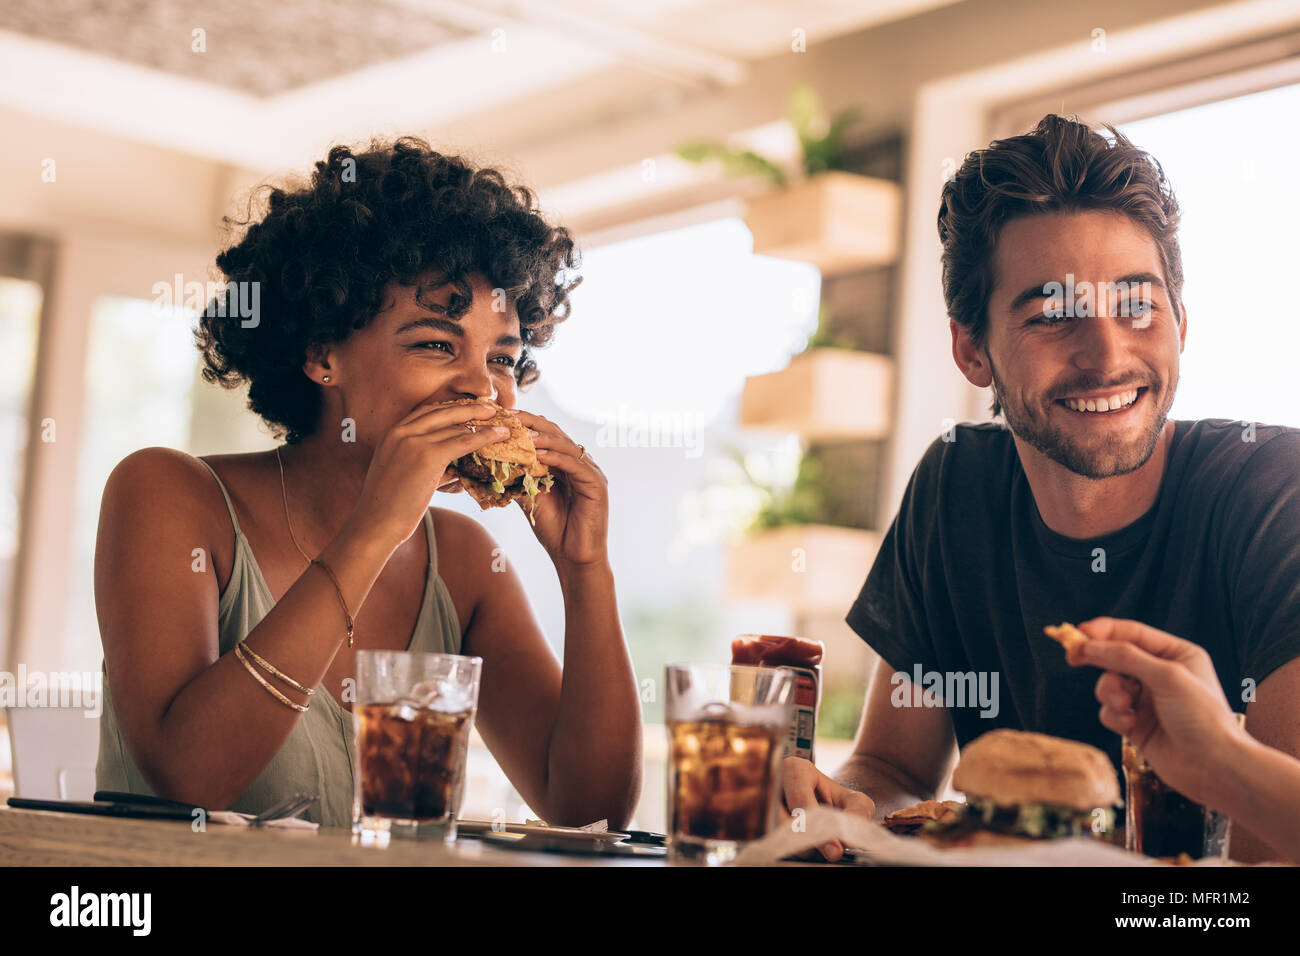 Junge Frau mit Freunden Burger essen im Restaurant. Junge Menschen heraus hängen in einem Cafe plaudern und essen Burger. Stockfoto